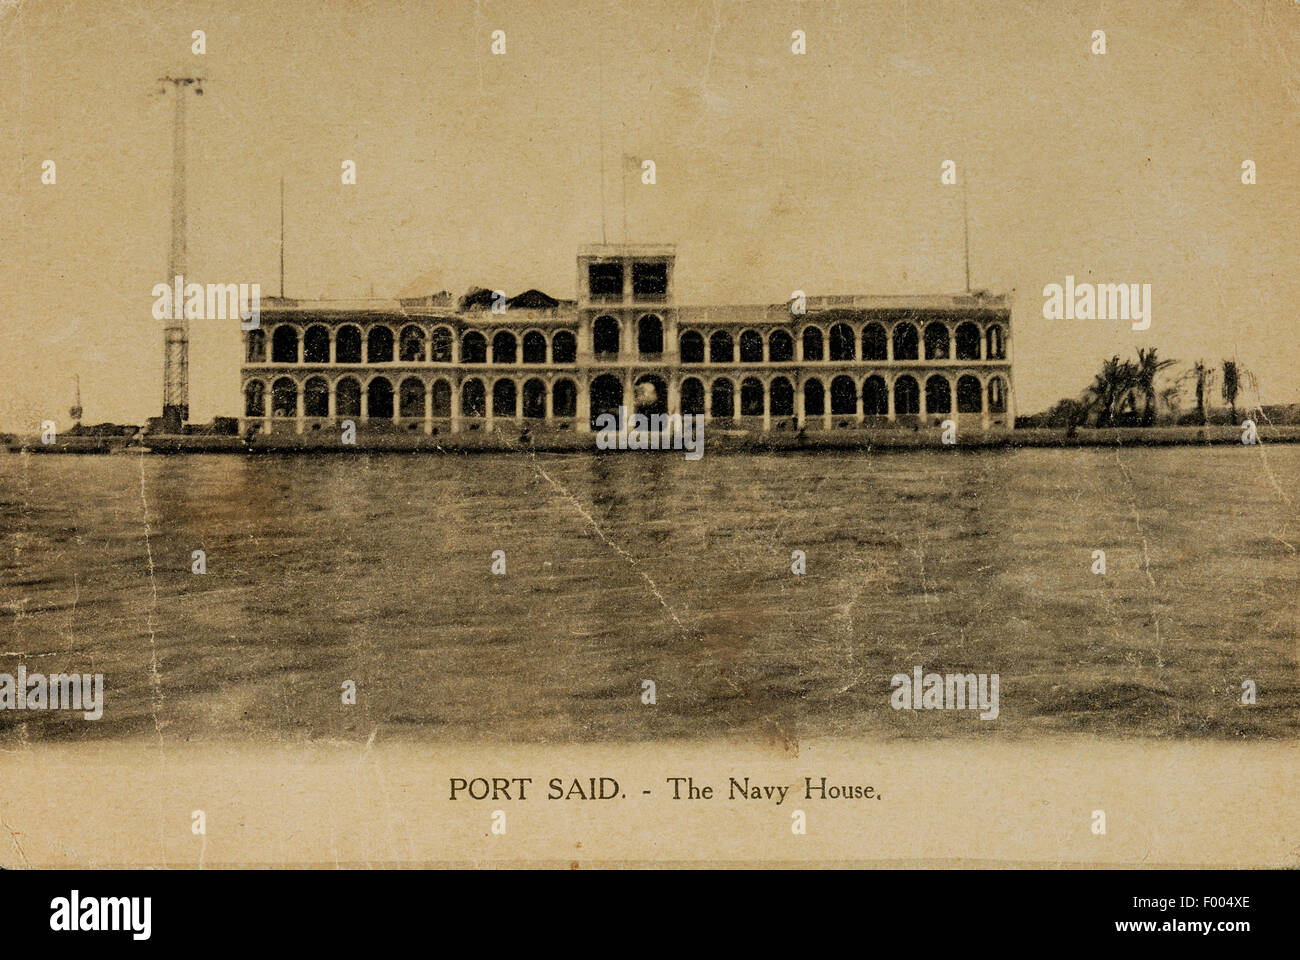 Port Said, Ägypten - 1900 s - eine Postkarte von der Suez-Kanal-Stadt an der Mündung des Suez-Kanals am Mittelmeer, ein Blick auf das Marine-Haus.   COPYRIGHT FOTOSAMMLUNG VON BARRY IVERSON Stockfoto